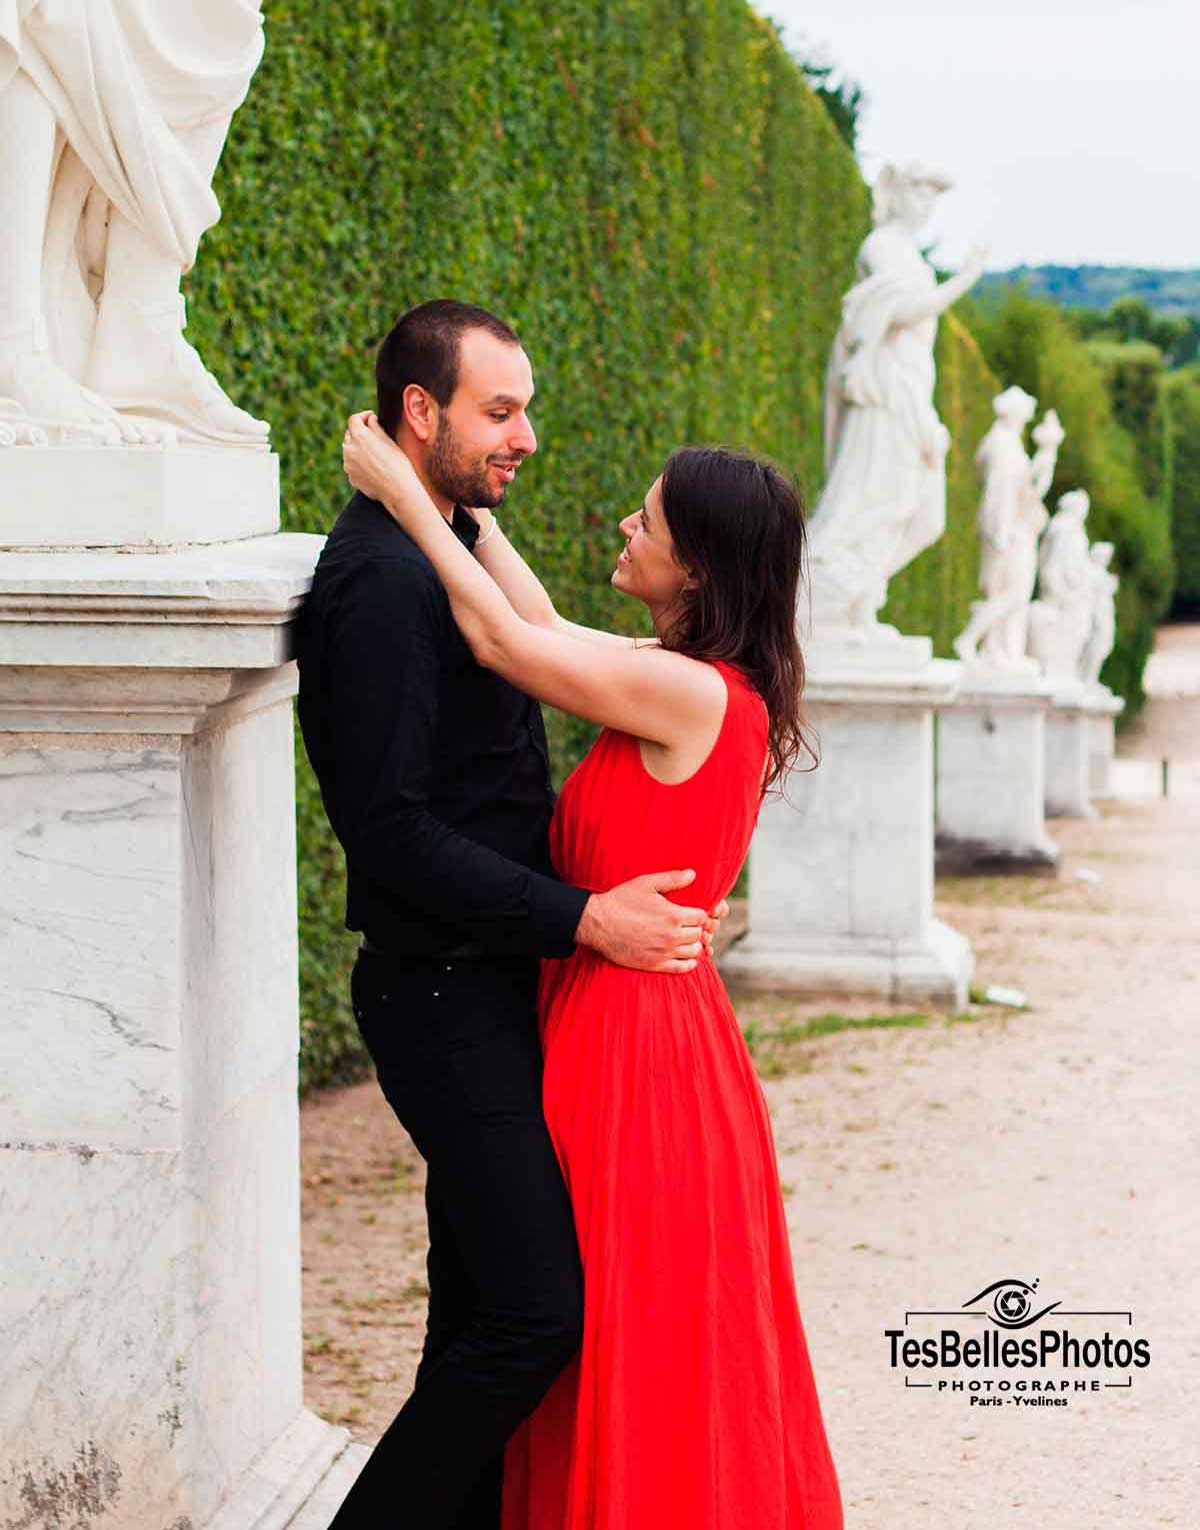 凡尔赛城堡花园 (Le Jardin de Château de Versailles) 情侣爱情照